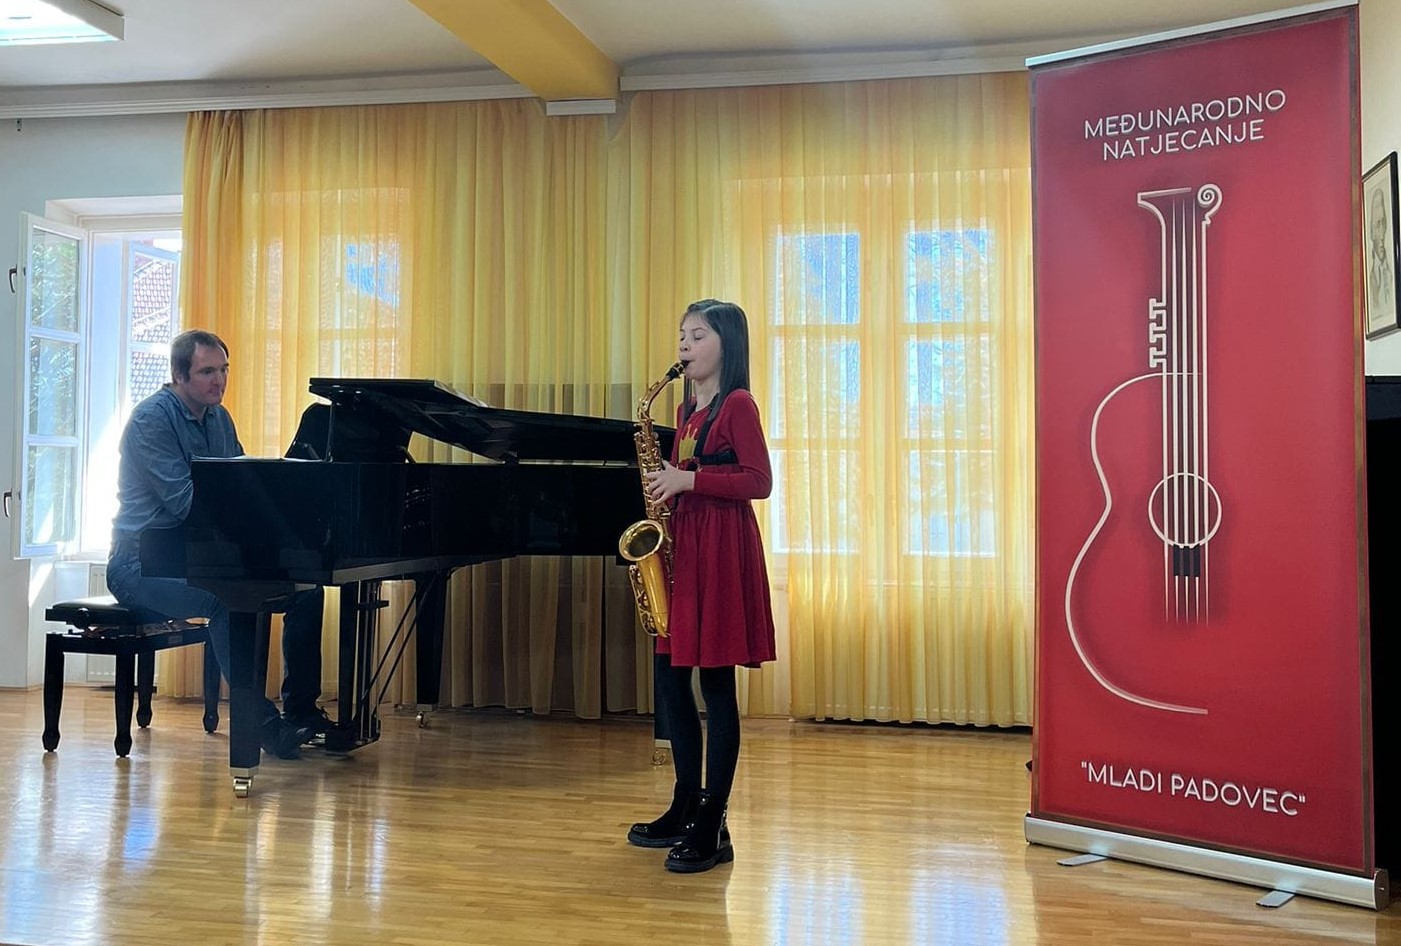 Mlada daruvarska saksafonistica Iris osvojila prvo mjesto na važnom međunarodnom natjecanju